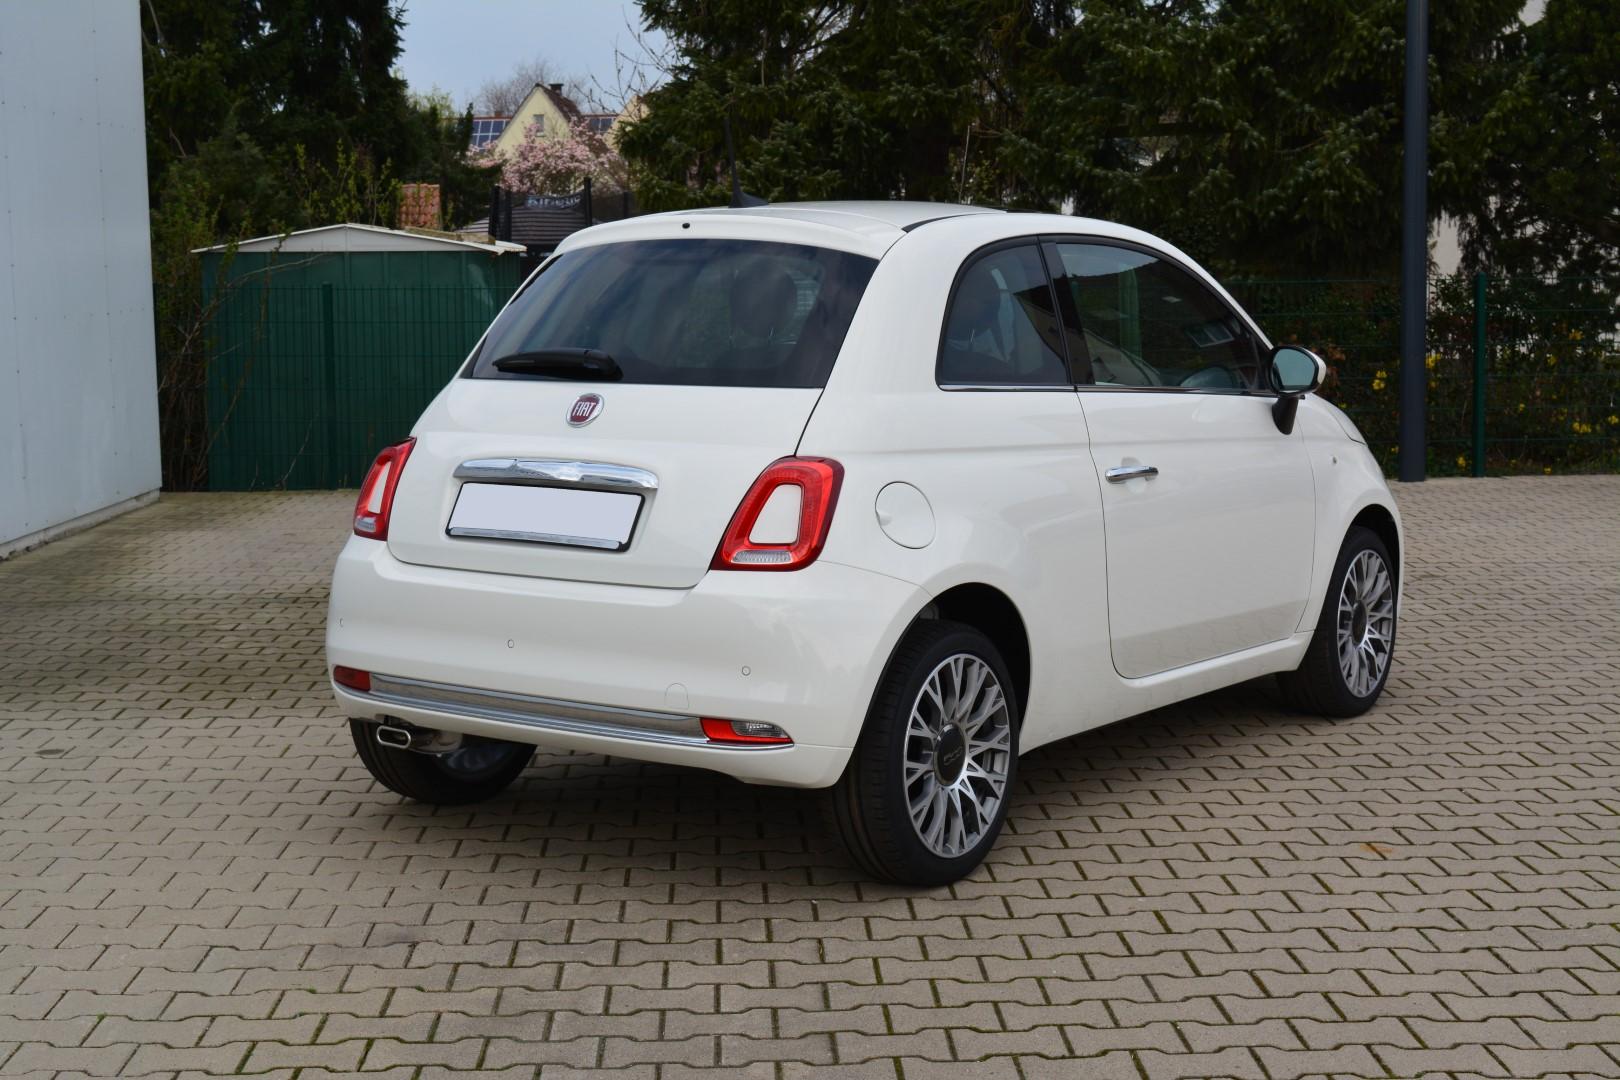 Fiat 500 EU Neuwagen günstig in Bielefeld kaufen